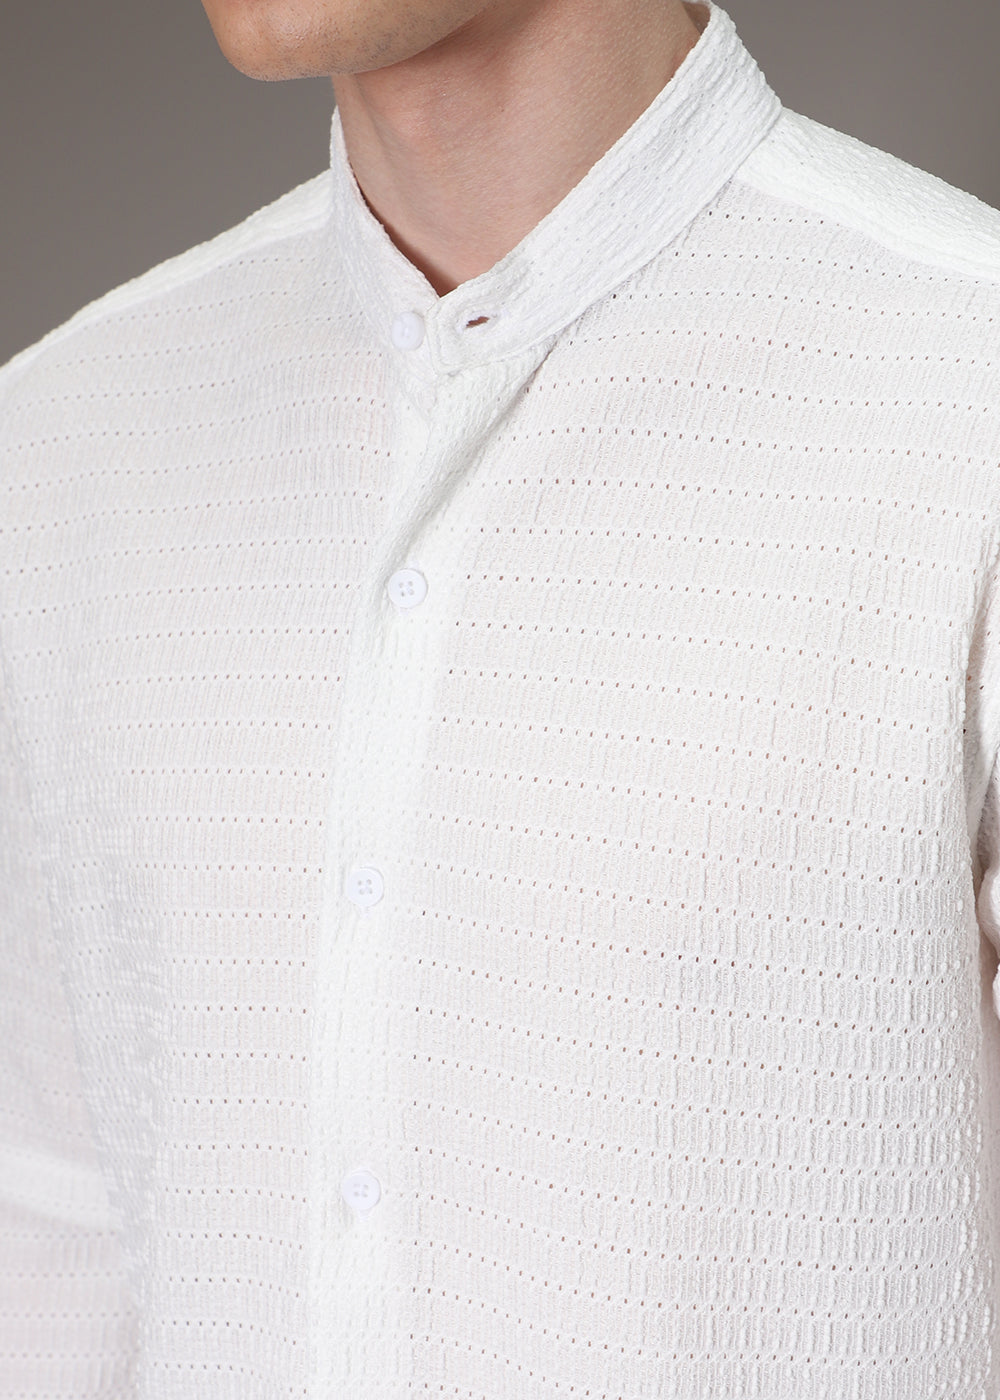 Marble White Knitted Crochet Shirt